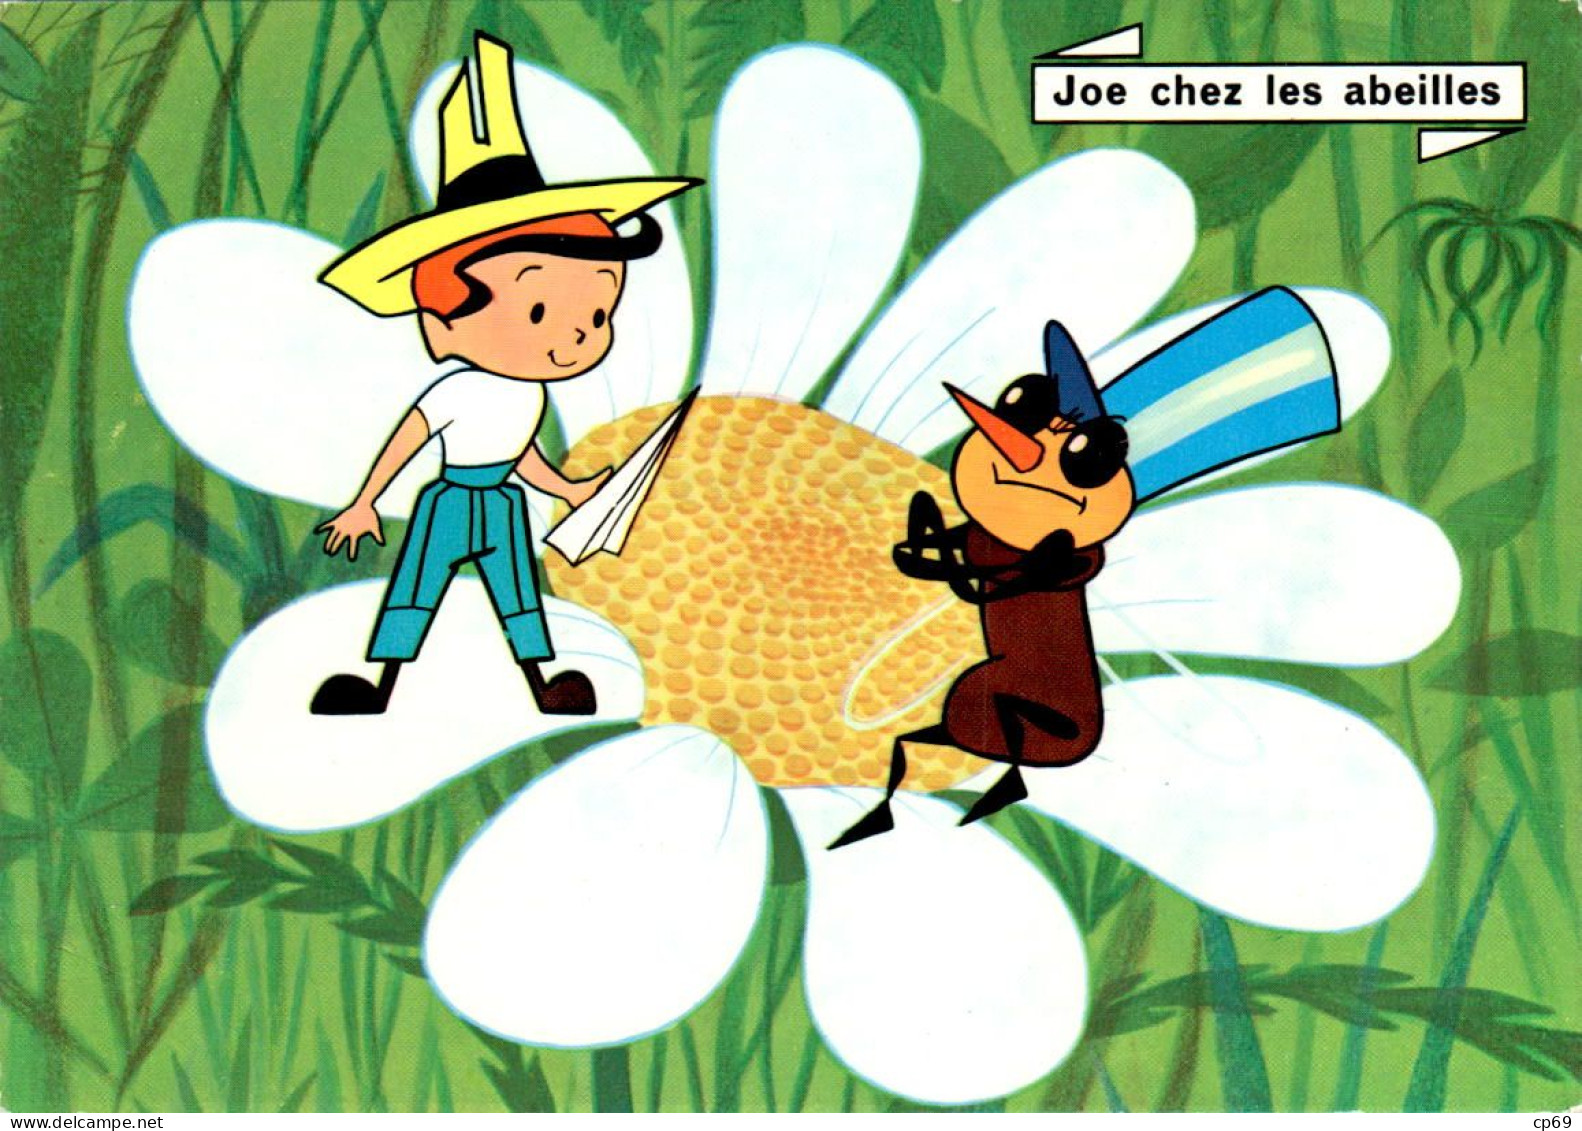 Les Aventures De Joe ORTF Jean Image Joe Chez Les Abeilles RTF Récréation N°10 Abeille Ape Bee En TB.Etat - TV-Serien